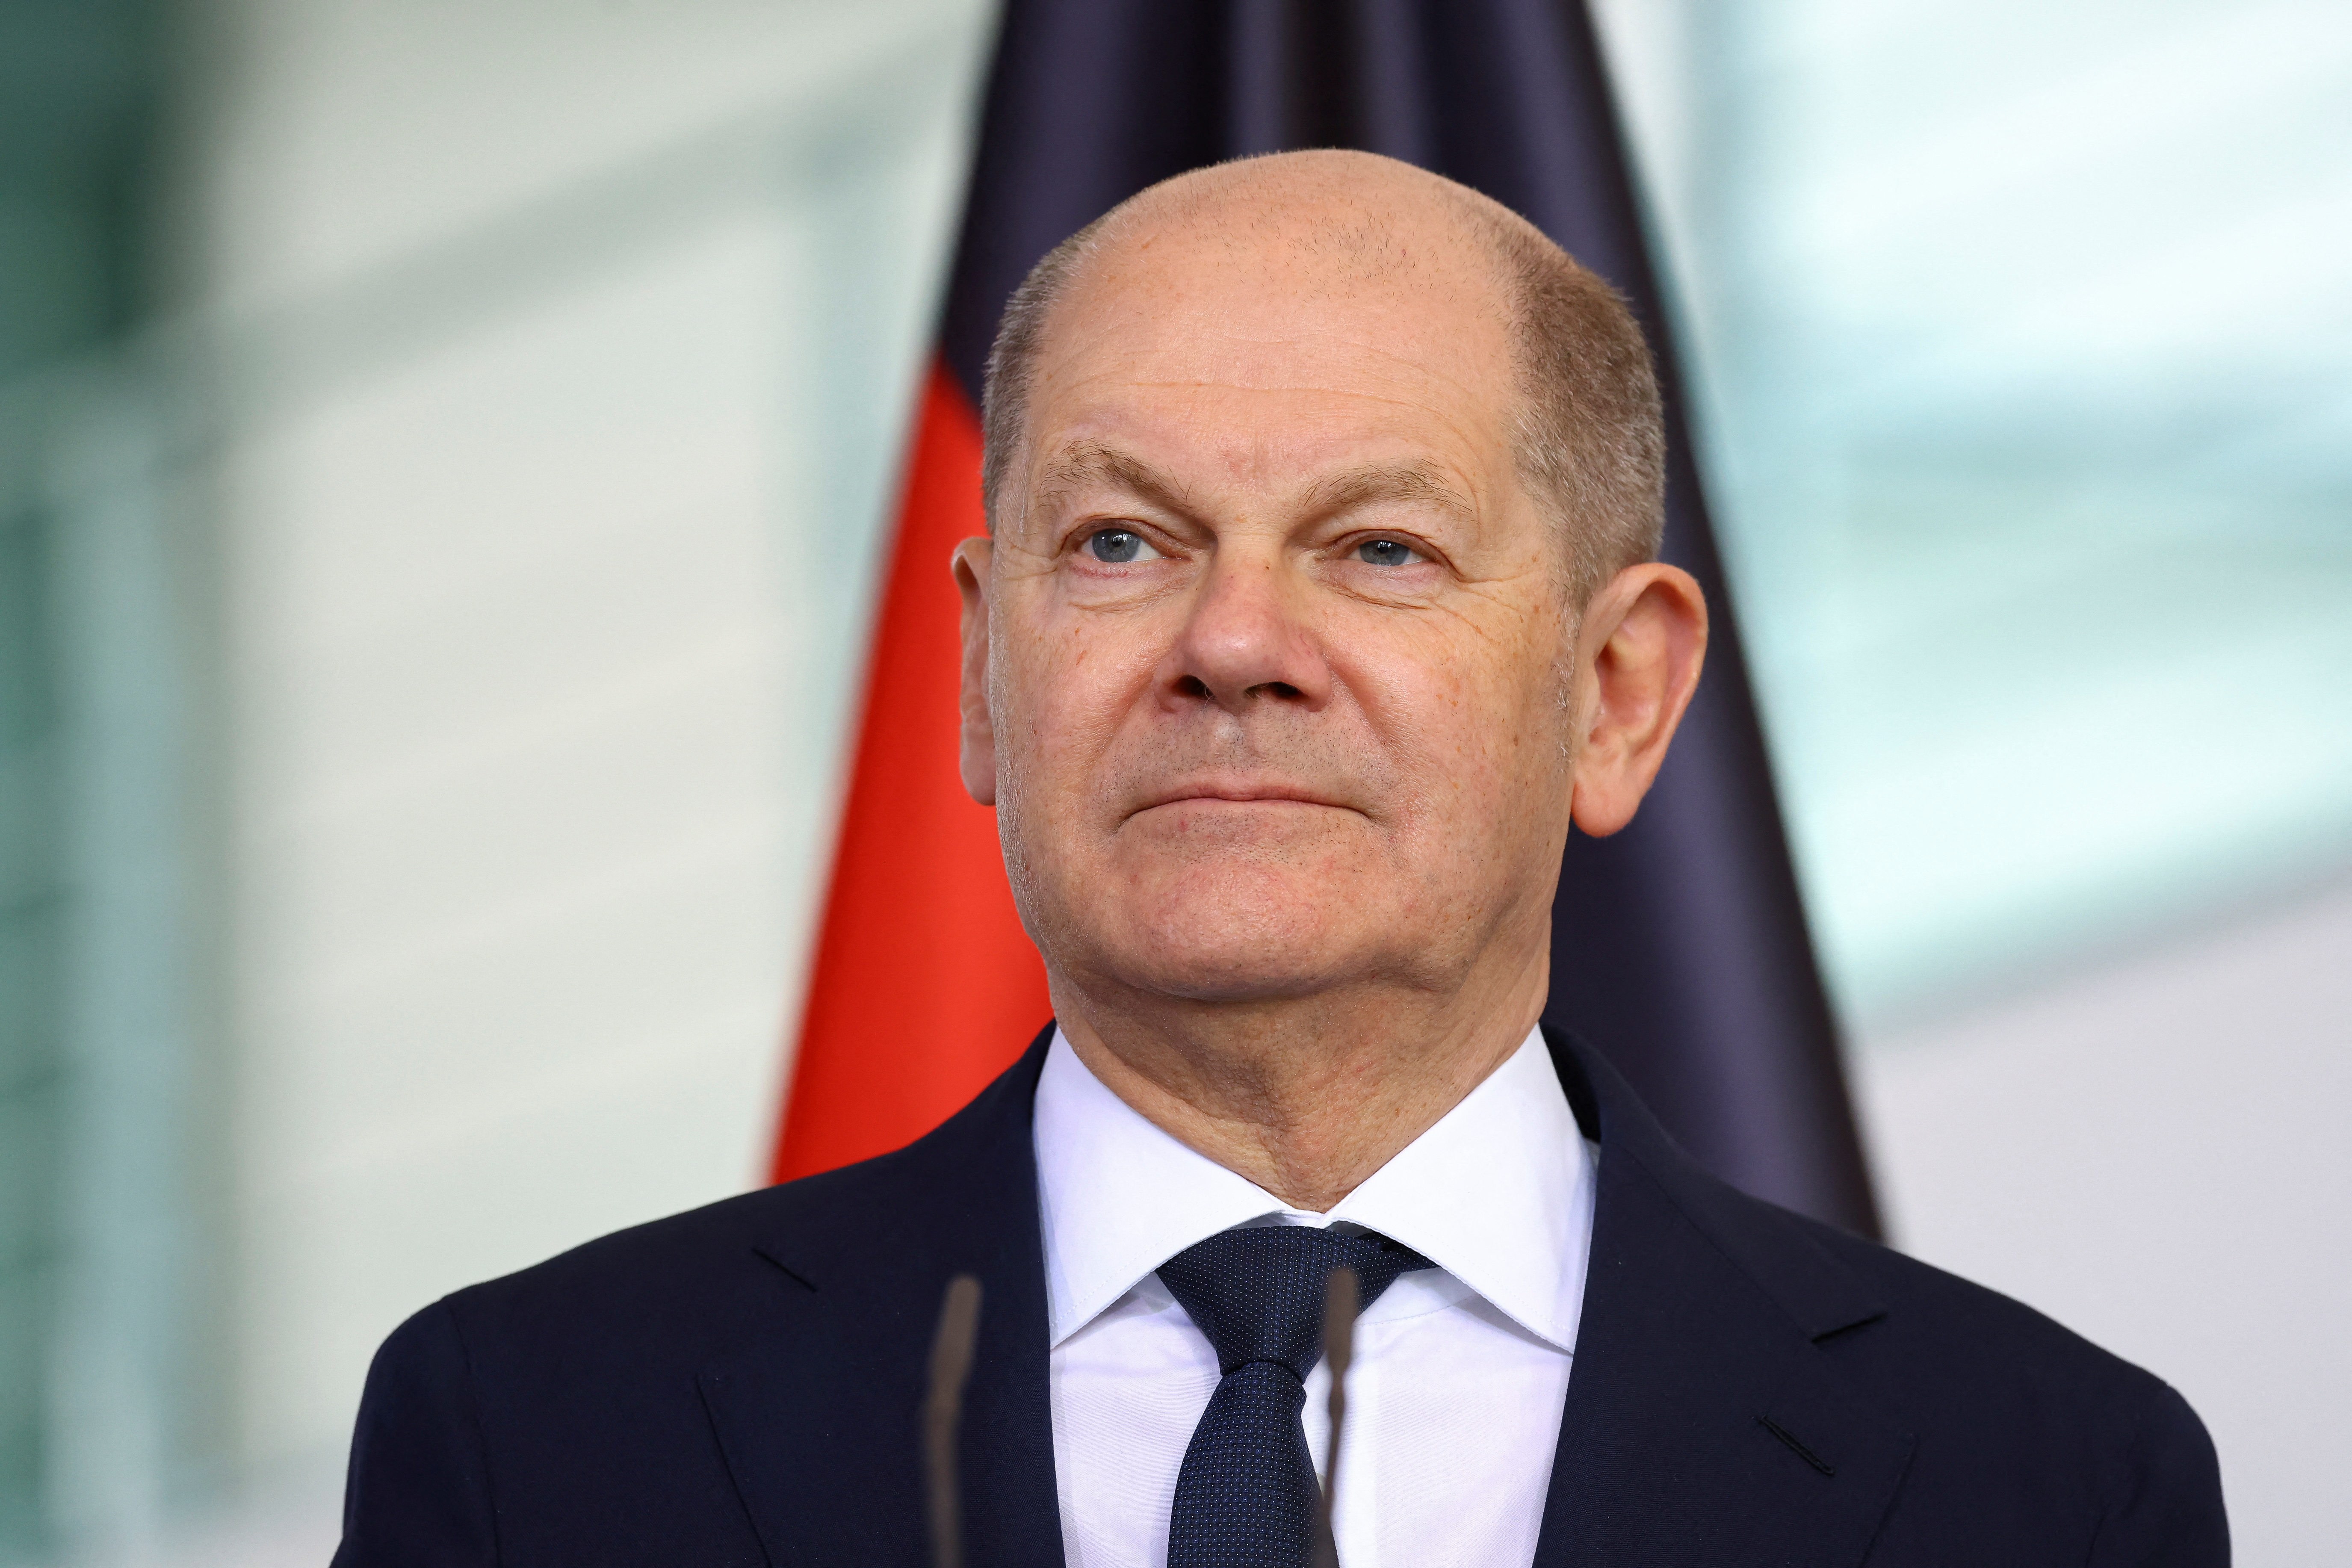 Georgian Prime Minister Kobakhidze visits Berlin